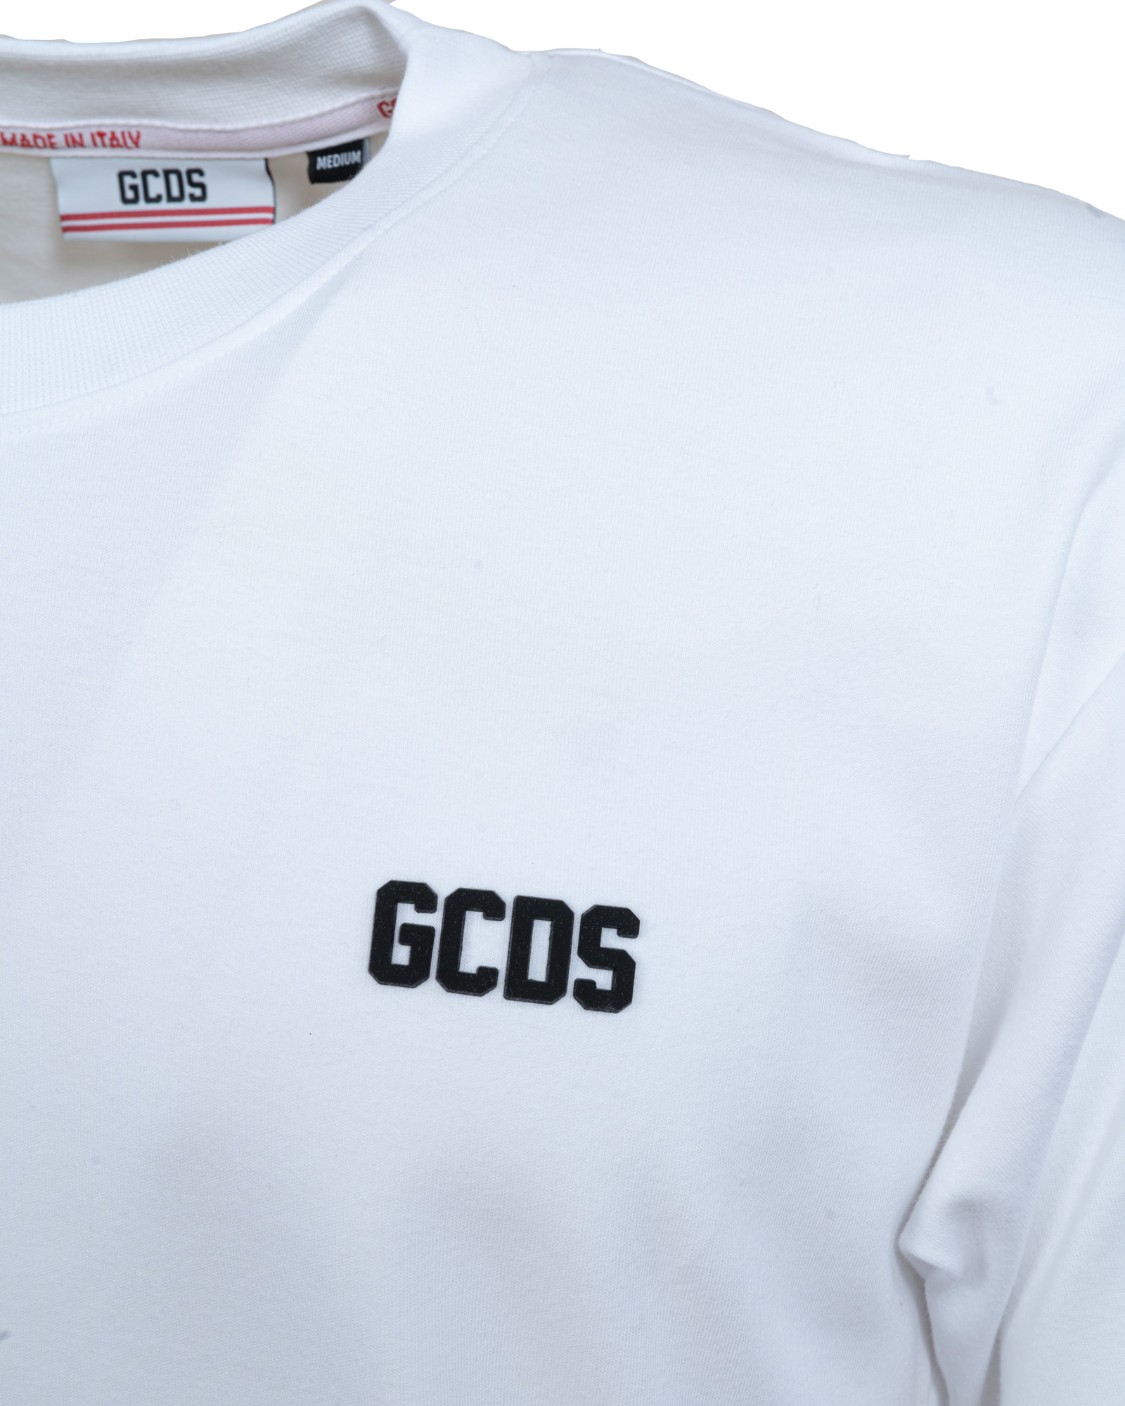 shop GCDS Saldi T-shirt: GCDS t-shirt bianca con logo nero, in contrasto.
Maniche corte.
Scollo rotondo.
Vestibilità regolare.
Composizione: 100% cotone.
Made in Italy.. CC94M021001-01 number 9842115